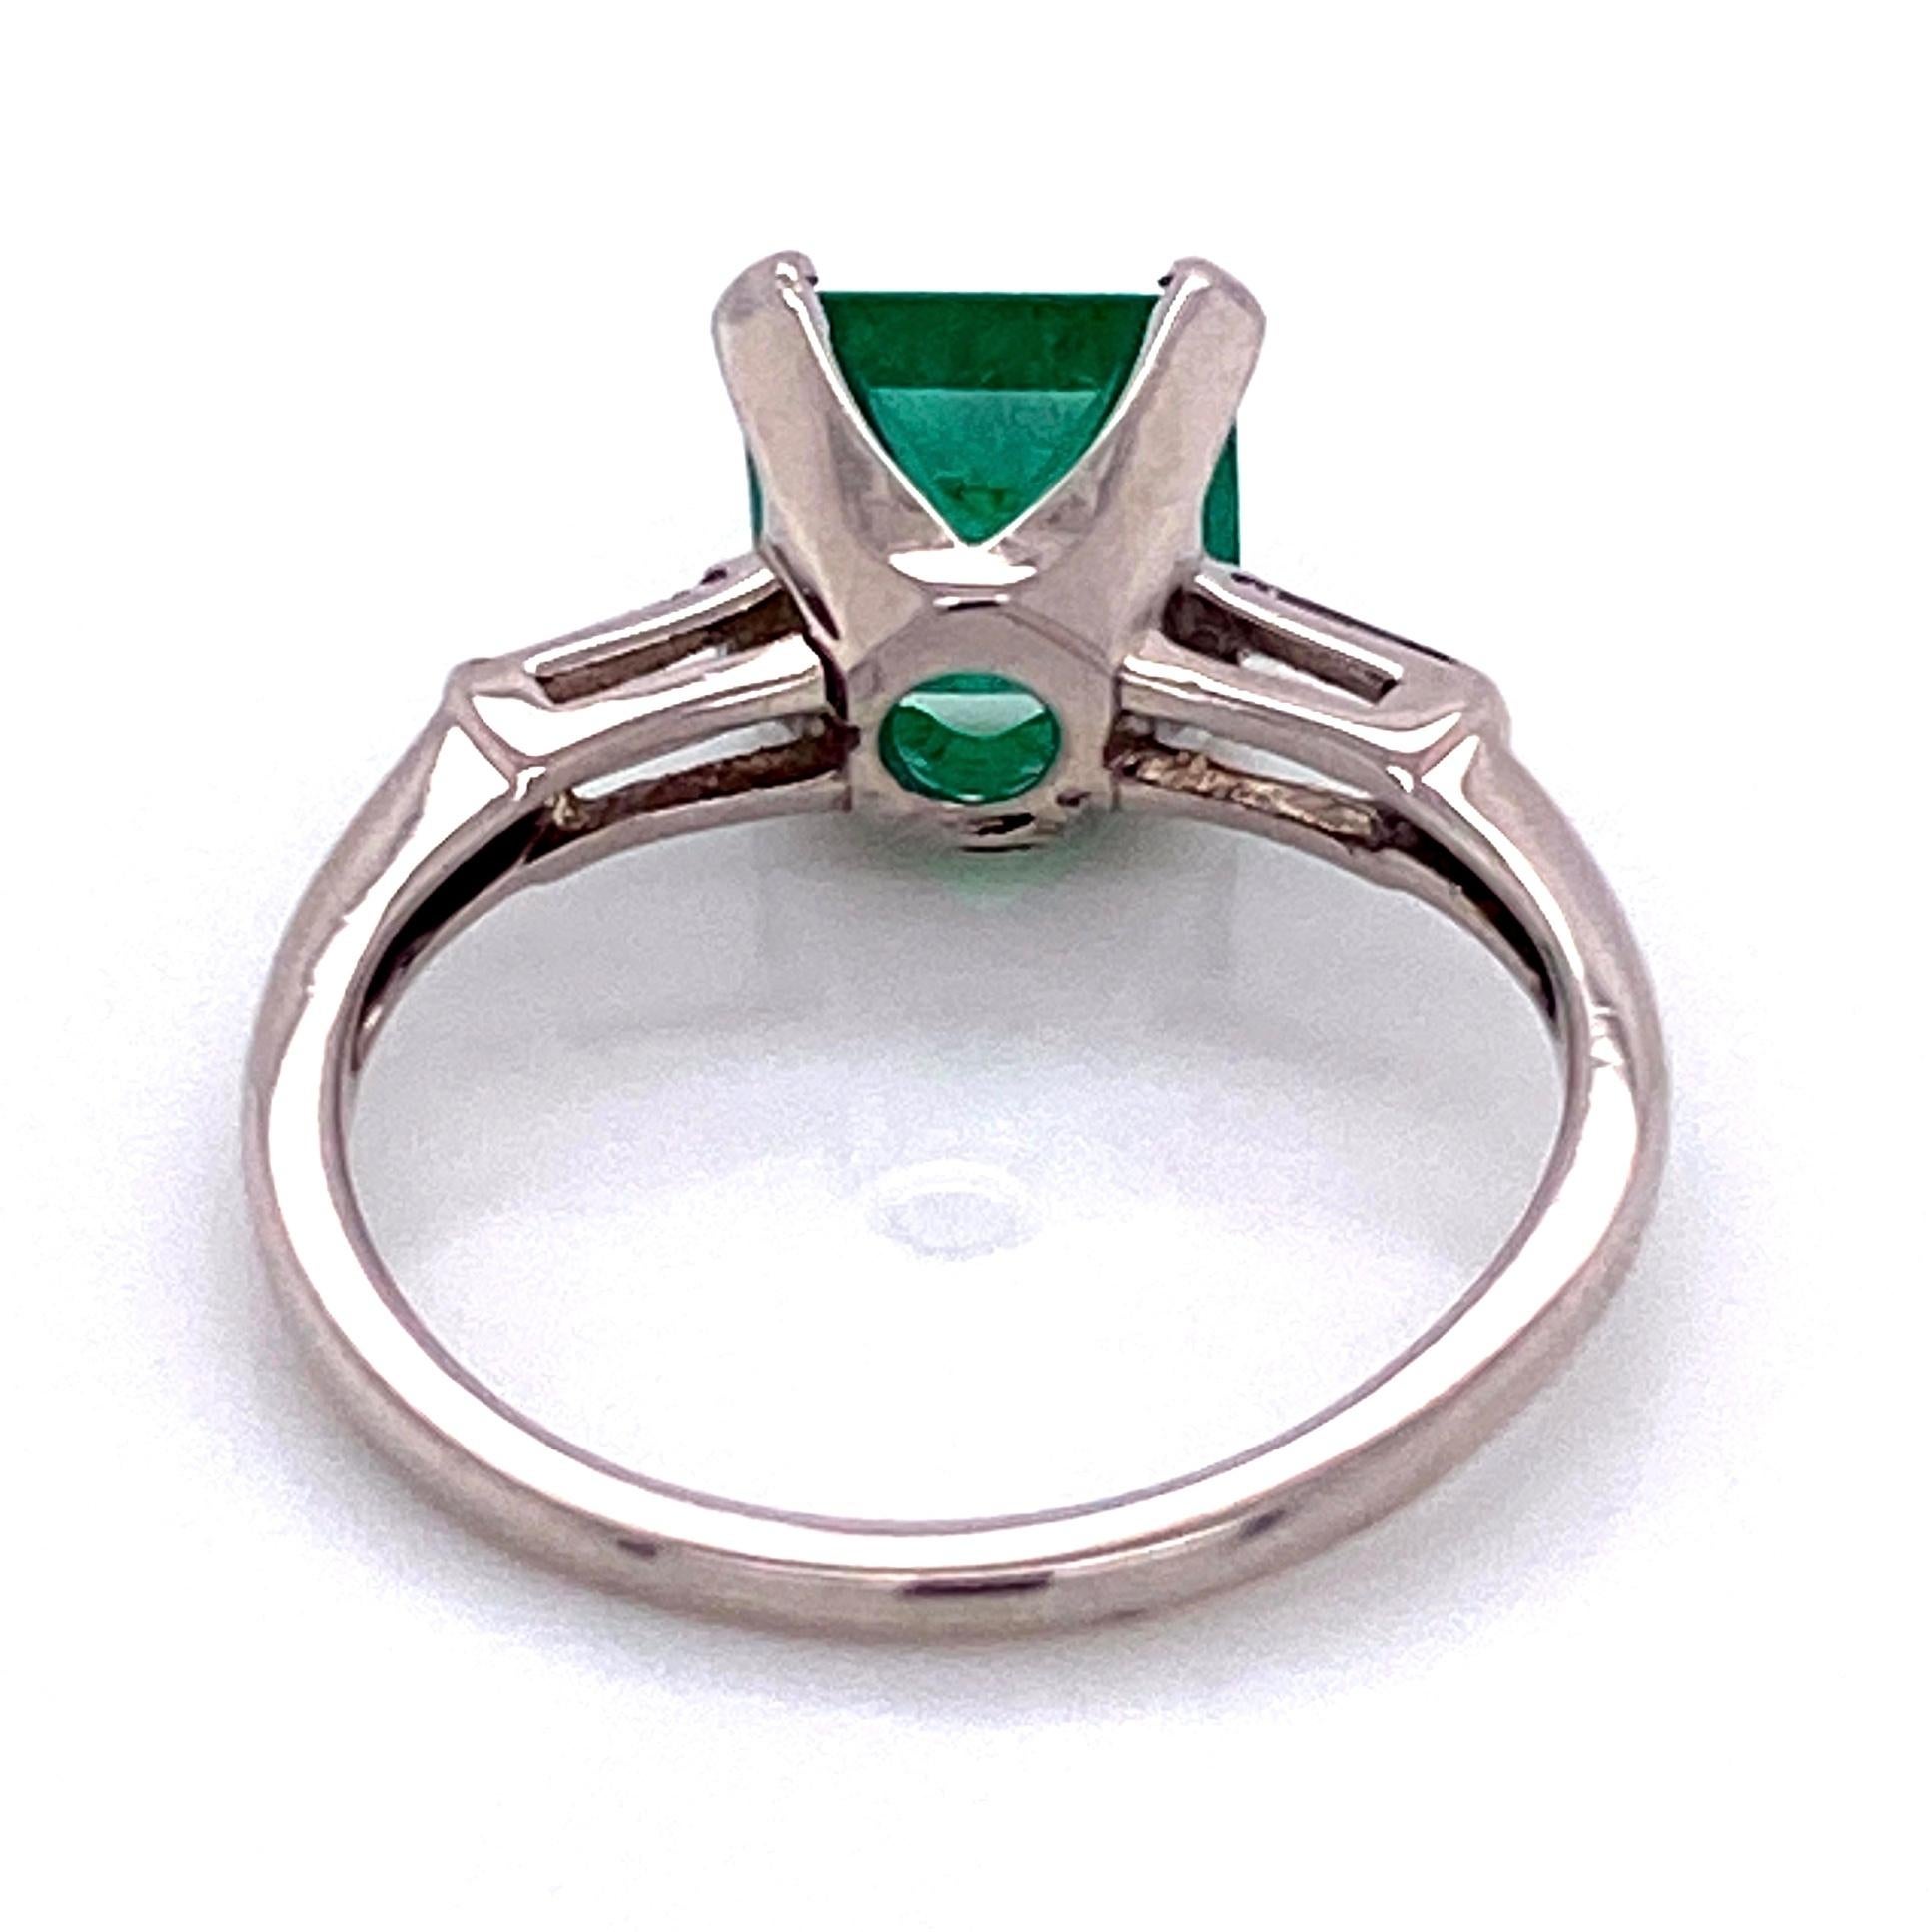 Emerald Cut 1.93 Carat Green Emerald and Baguette Diamond Platinum Ring Estate Fine Jewelry